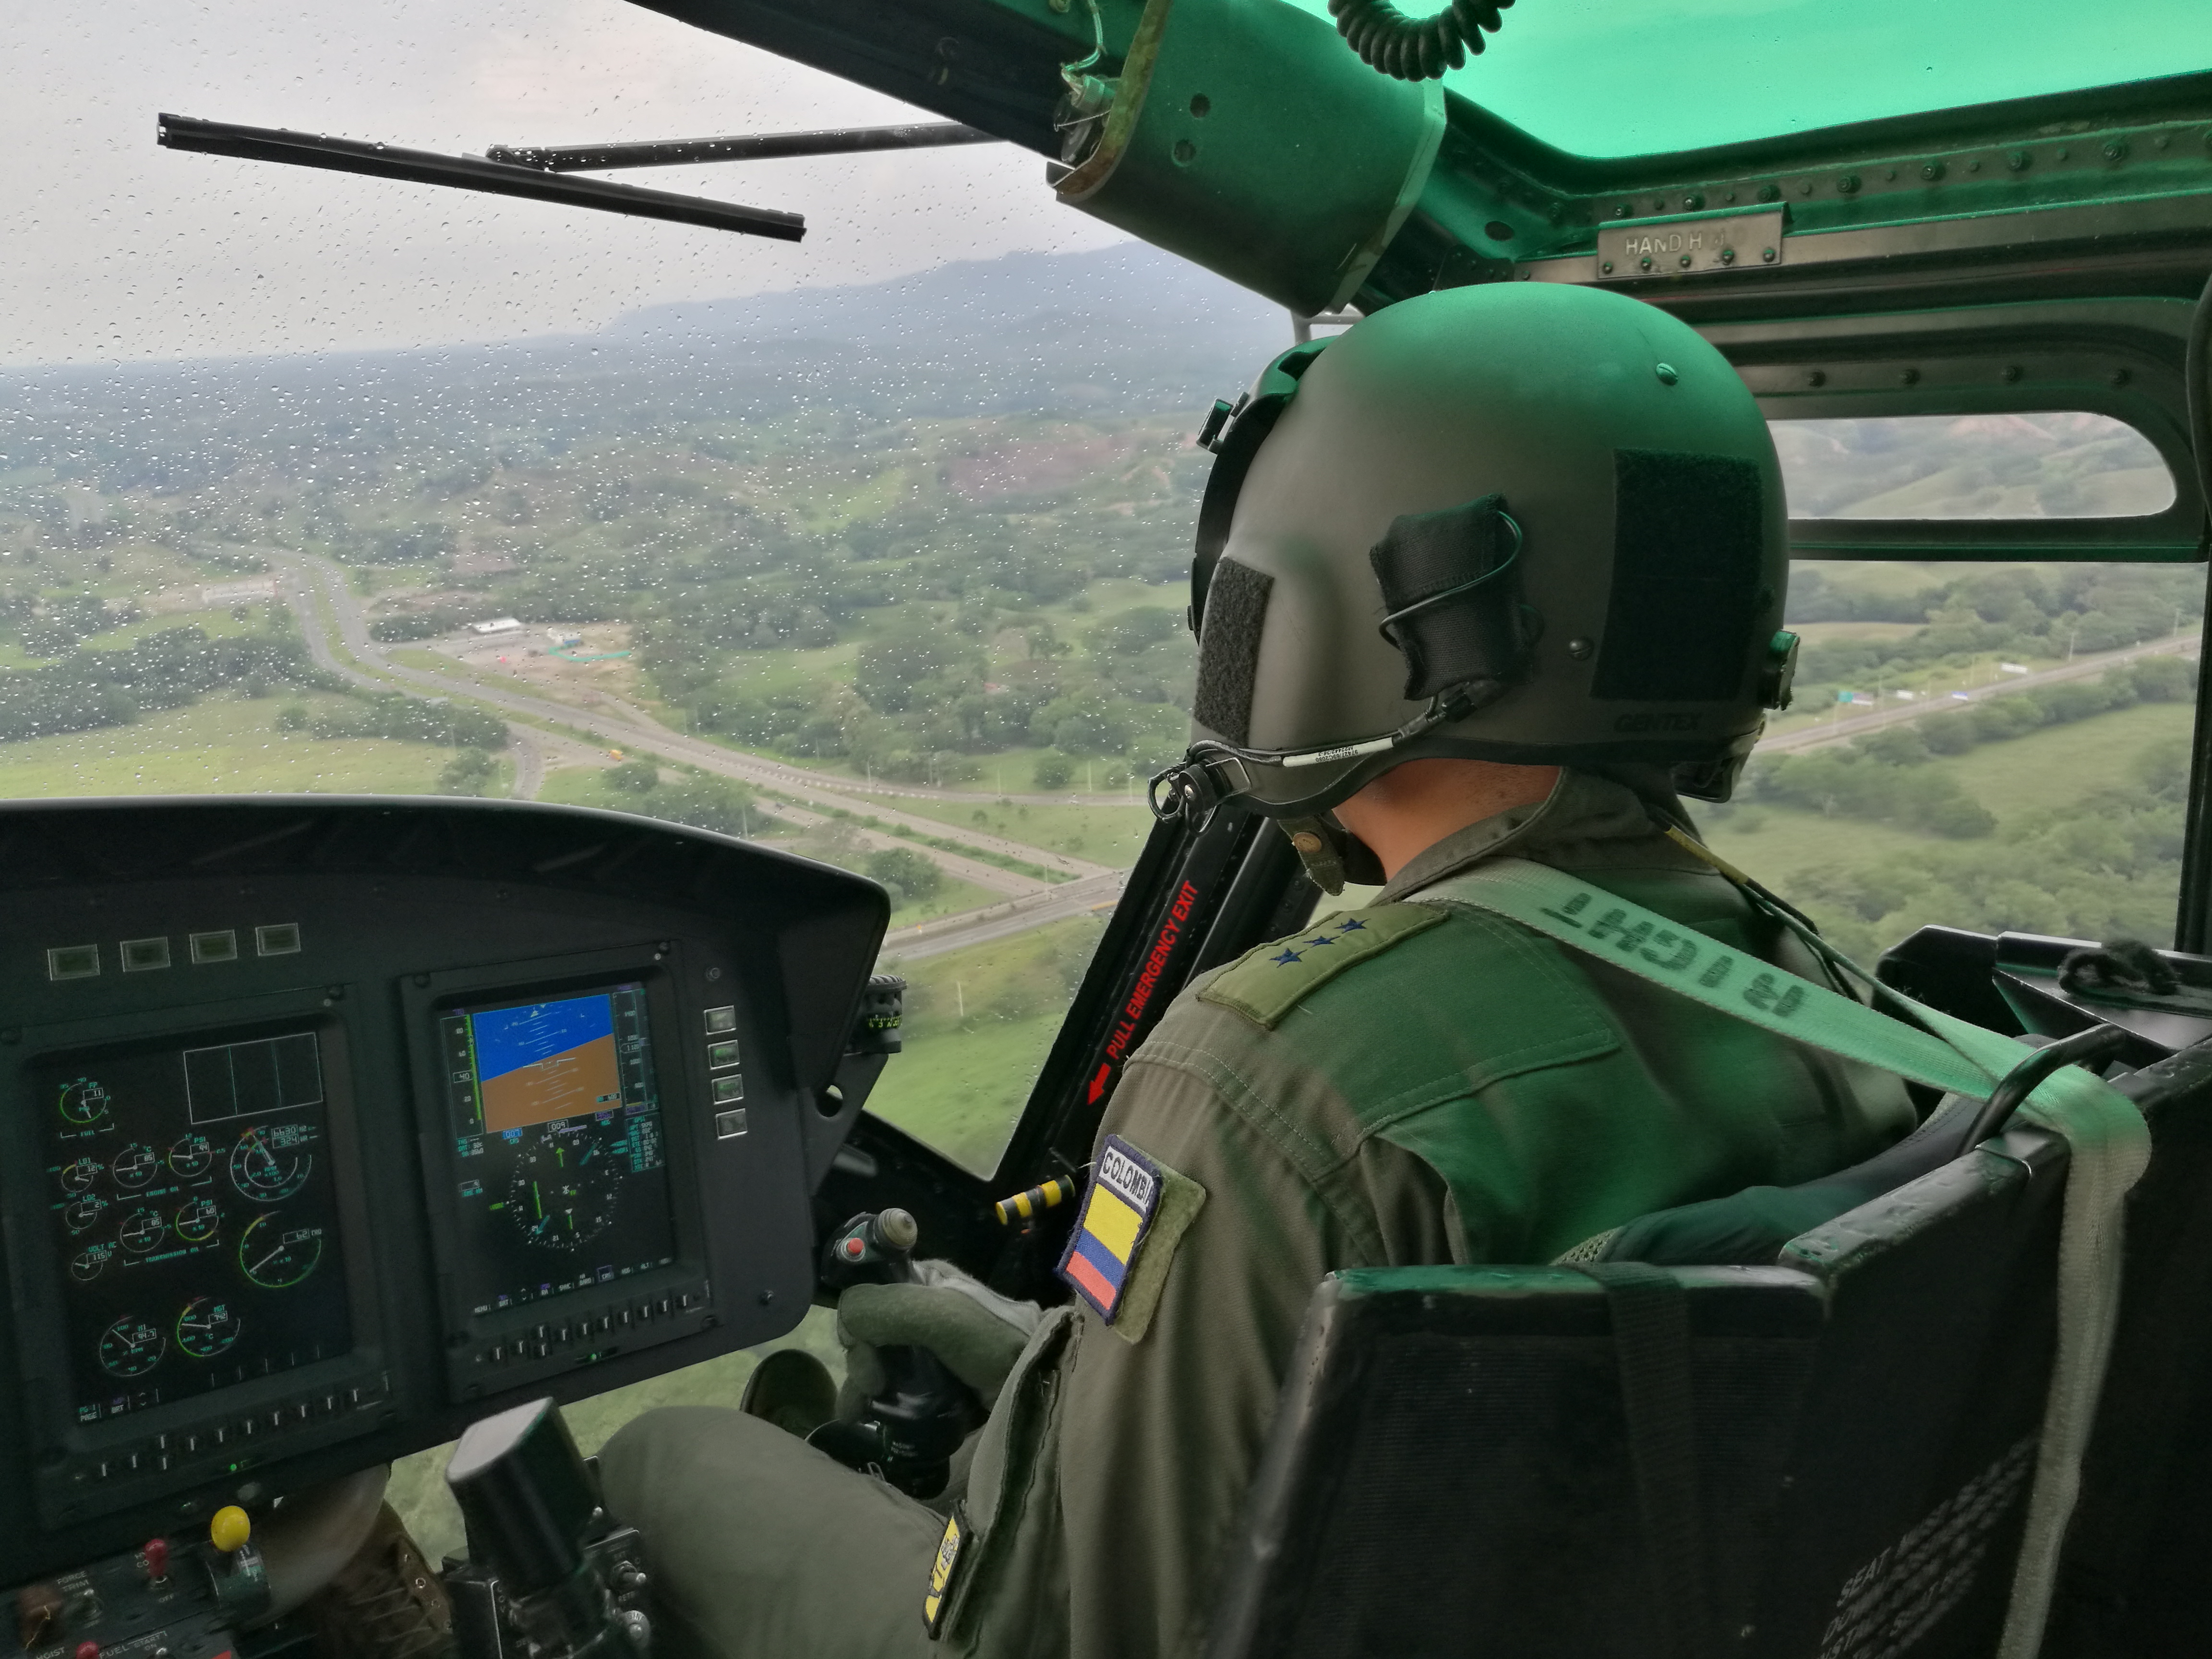 Fuerza Aérea Colombiana vigila las principales vías del centro de país durante la Semana Santa